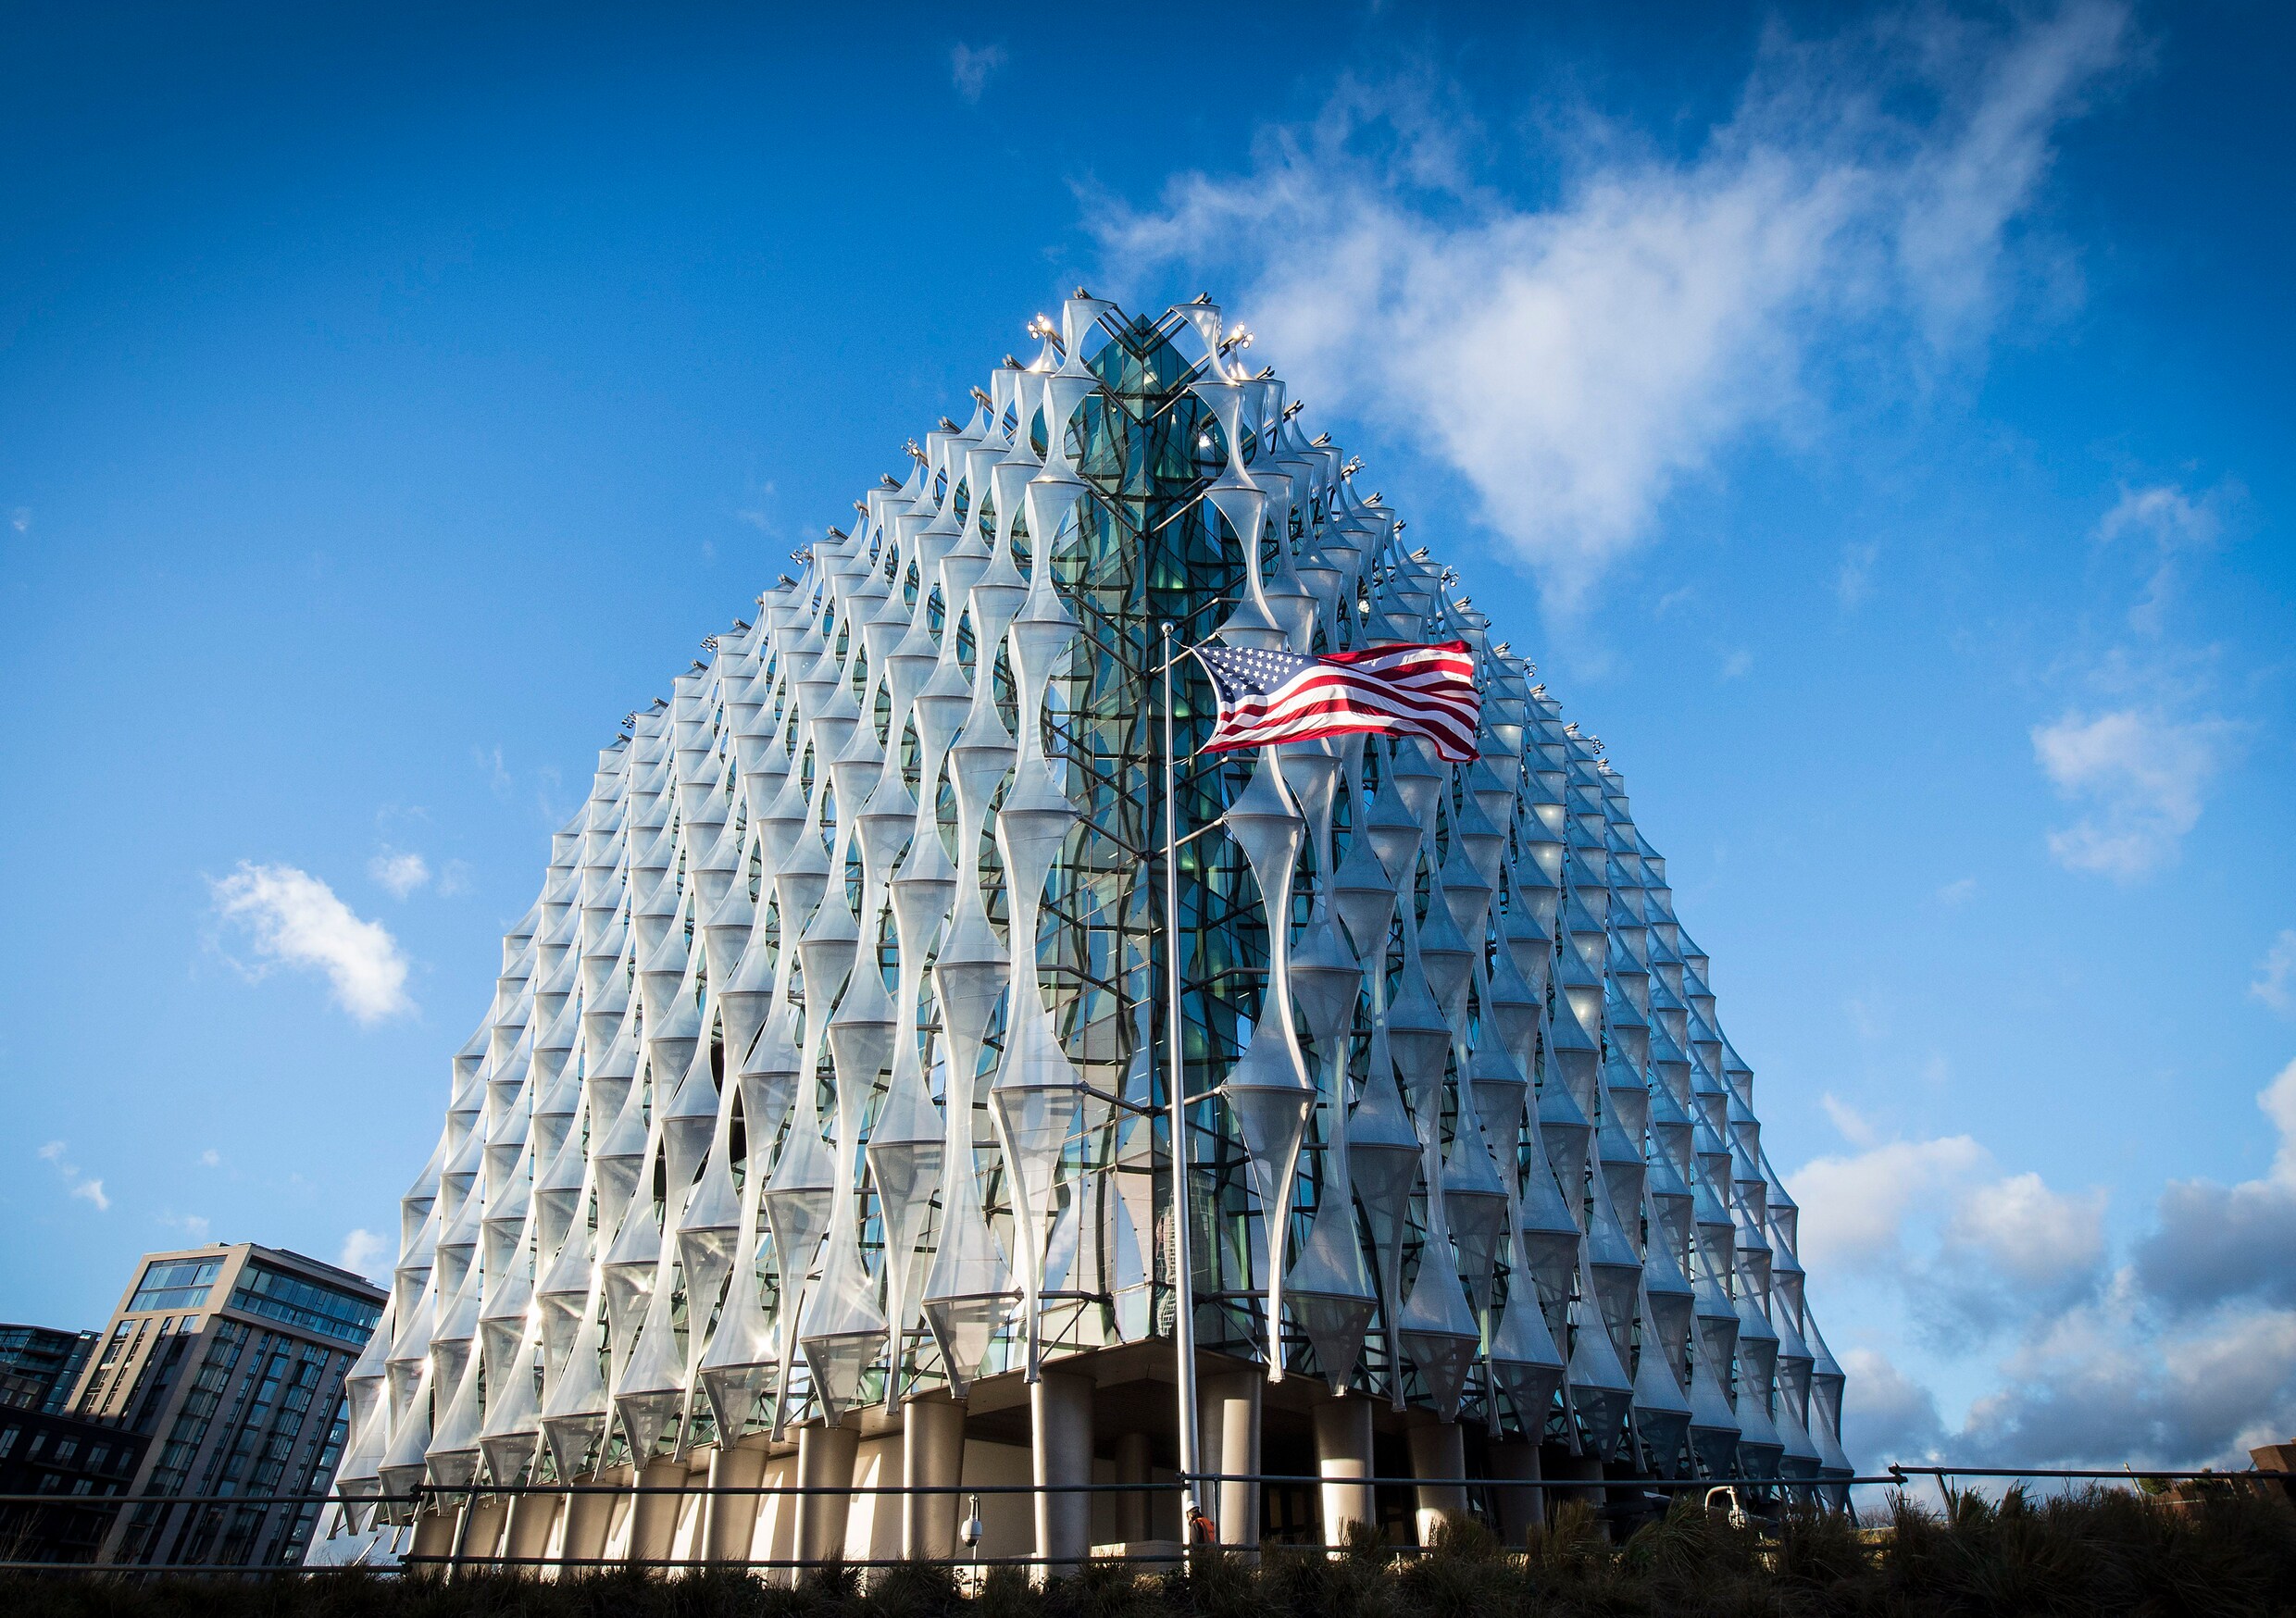 Amerikaanse ambassade in Londen opent deuren zonder Trump